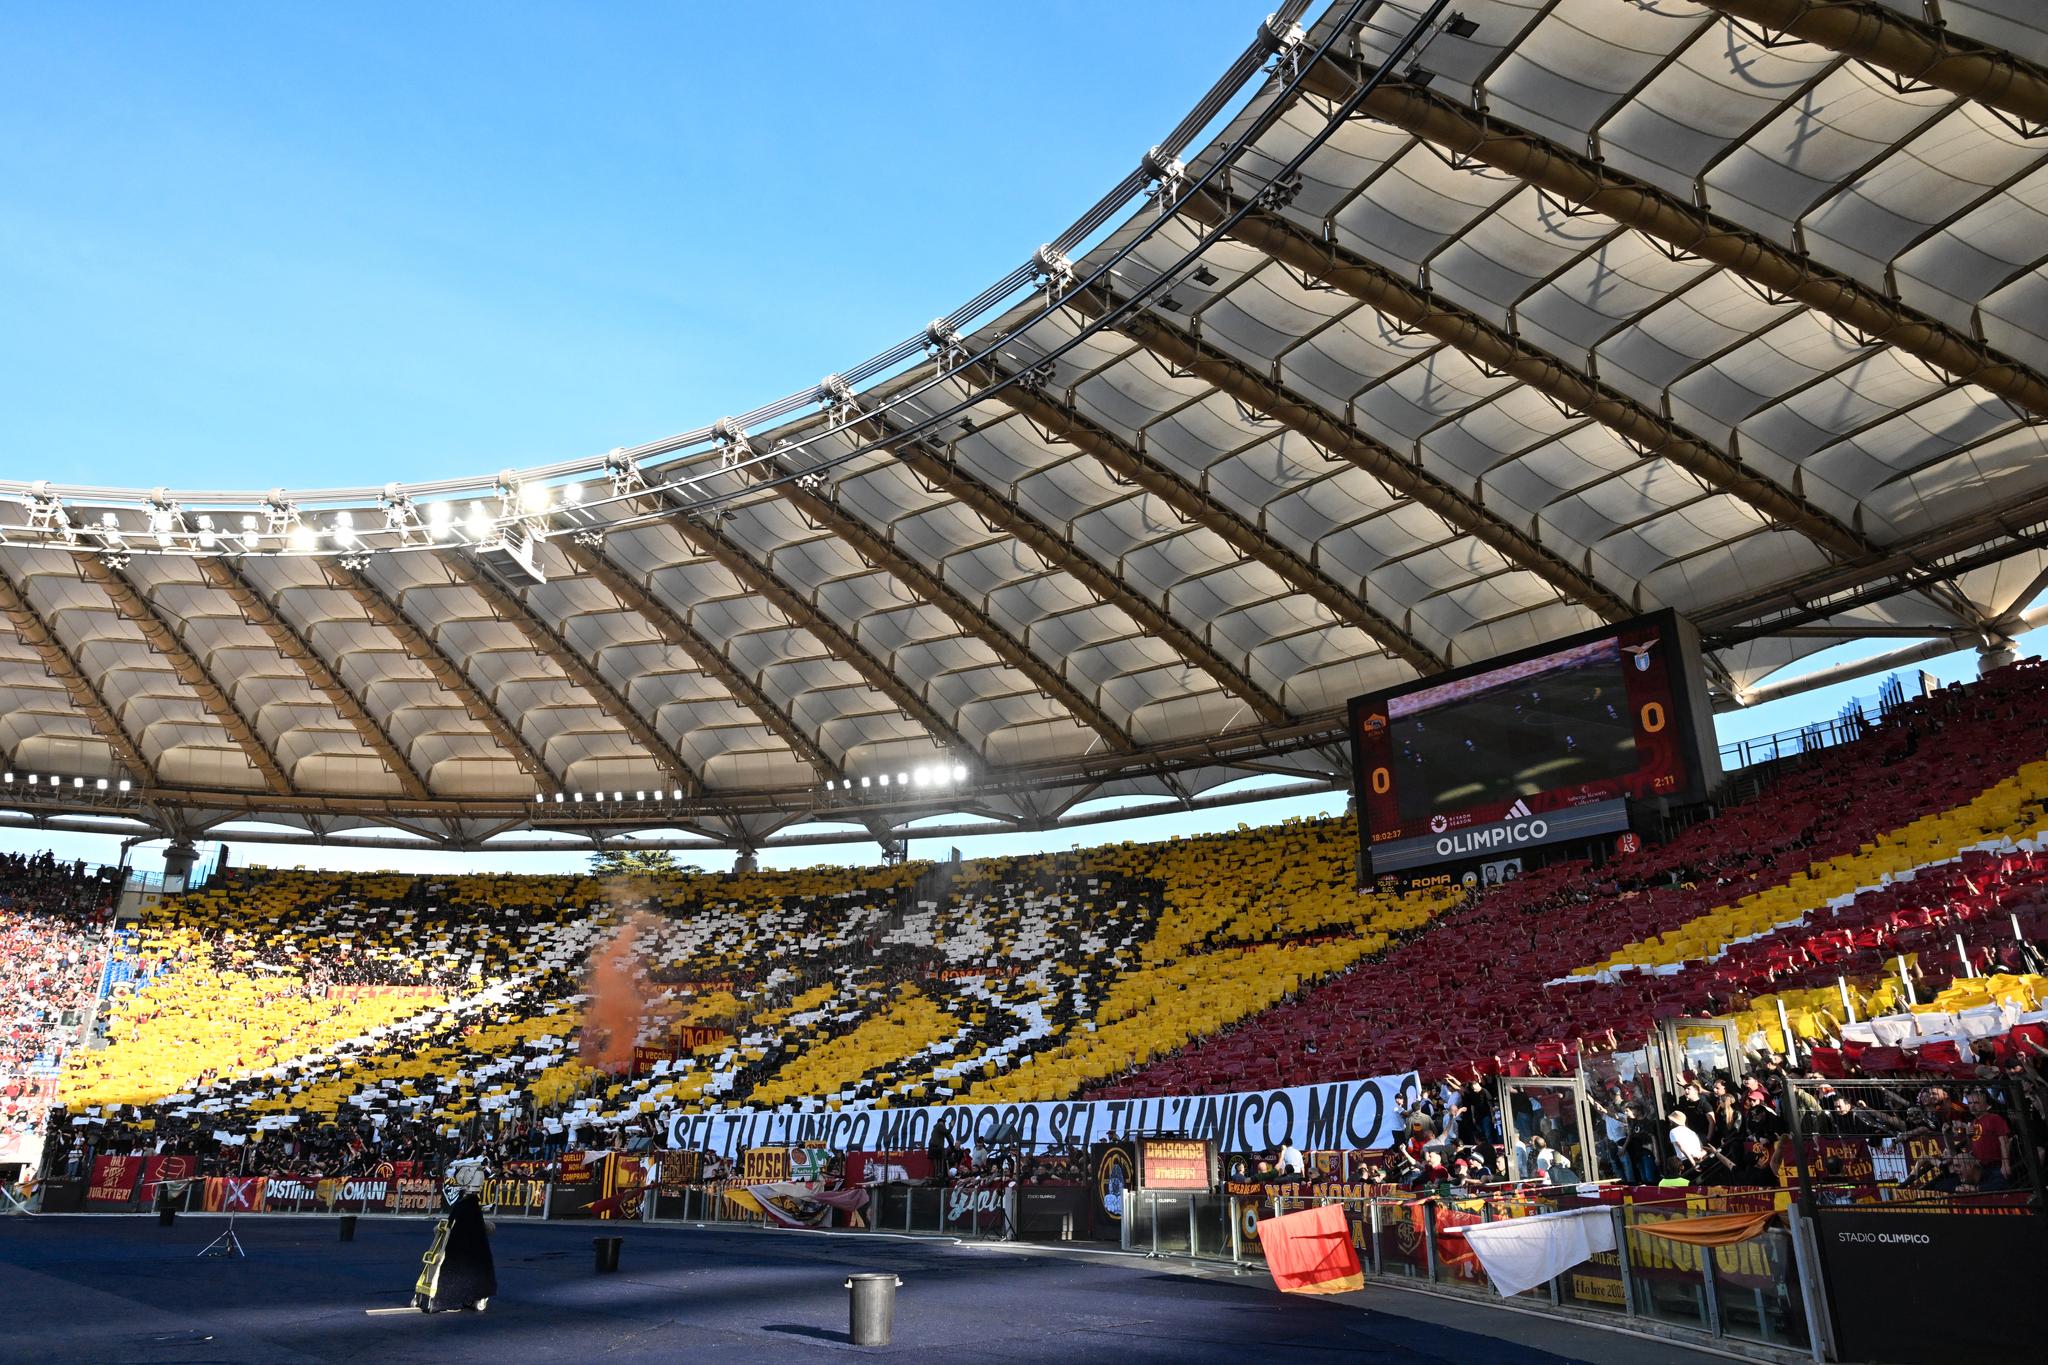 Målgangen er inne på Stadio Olimpico, der EM skal arrangeres, hvor fotballklubbene Roma og Lazio spiller sine hjemmekamper.